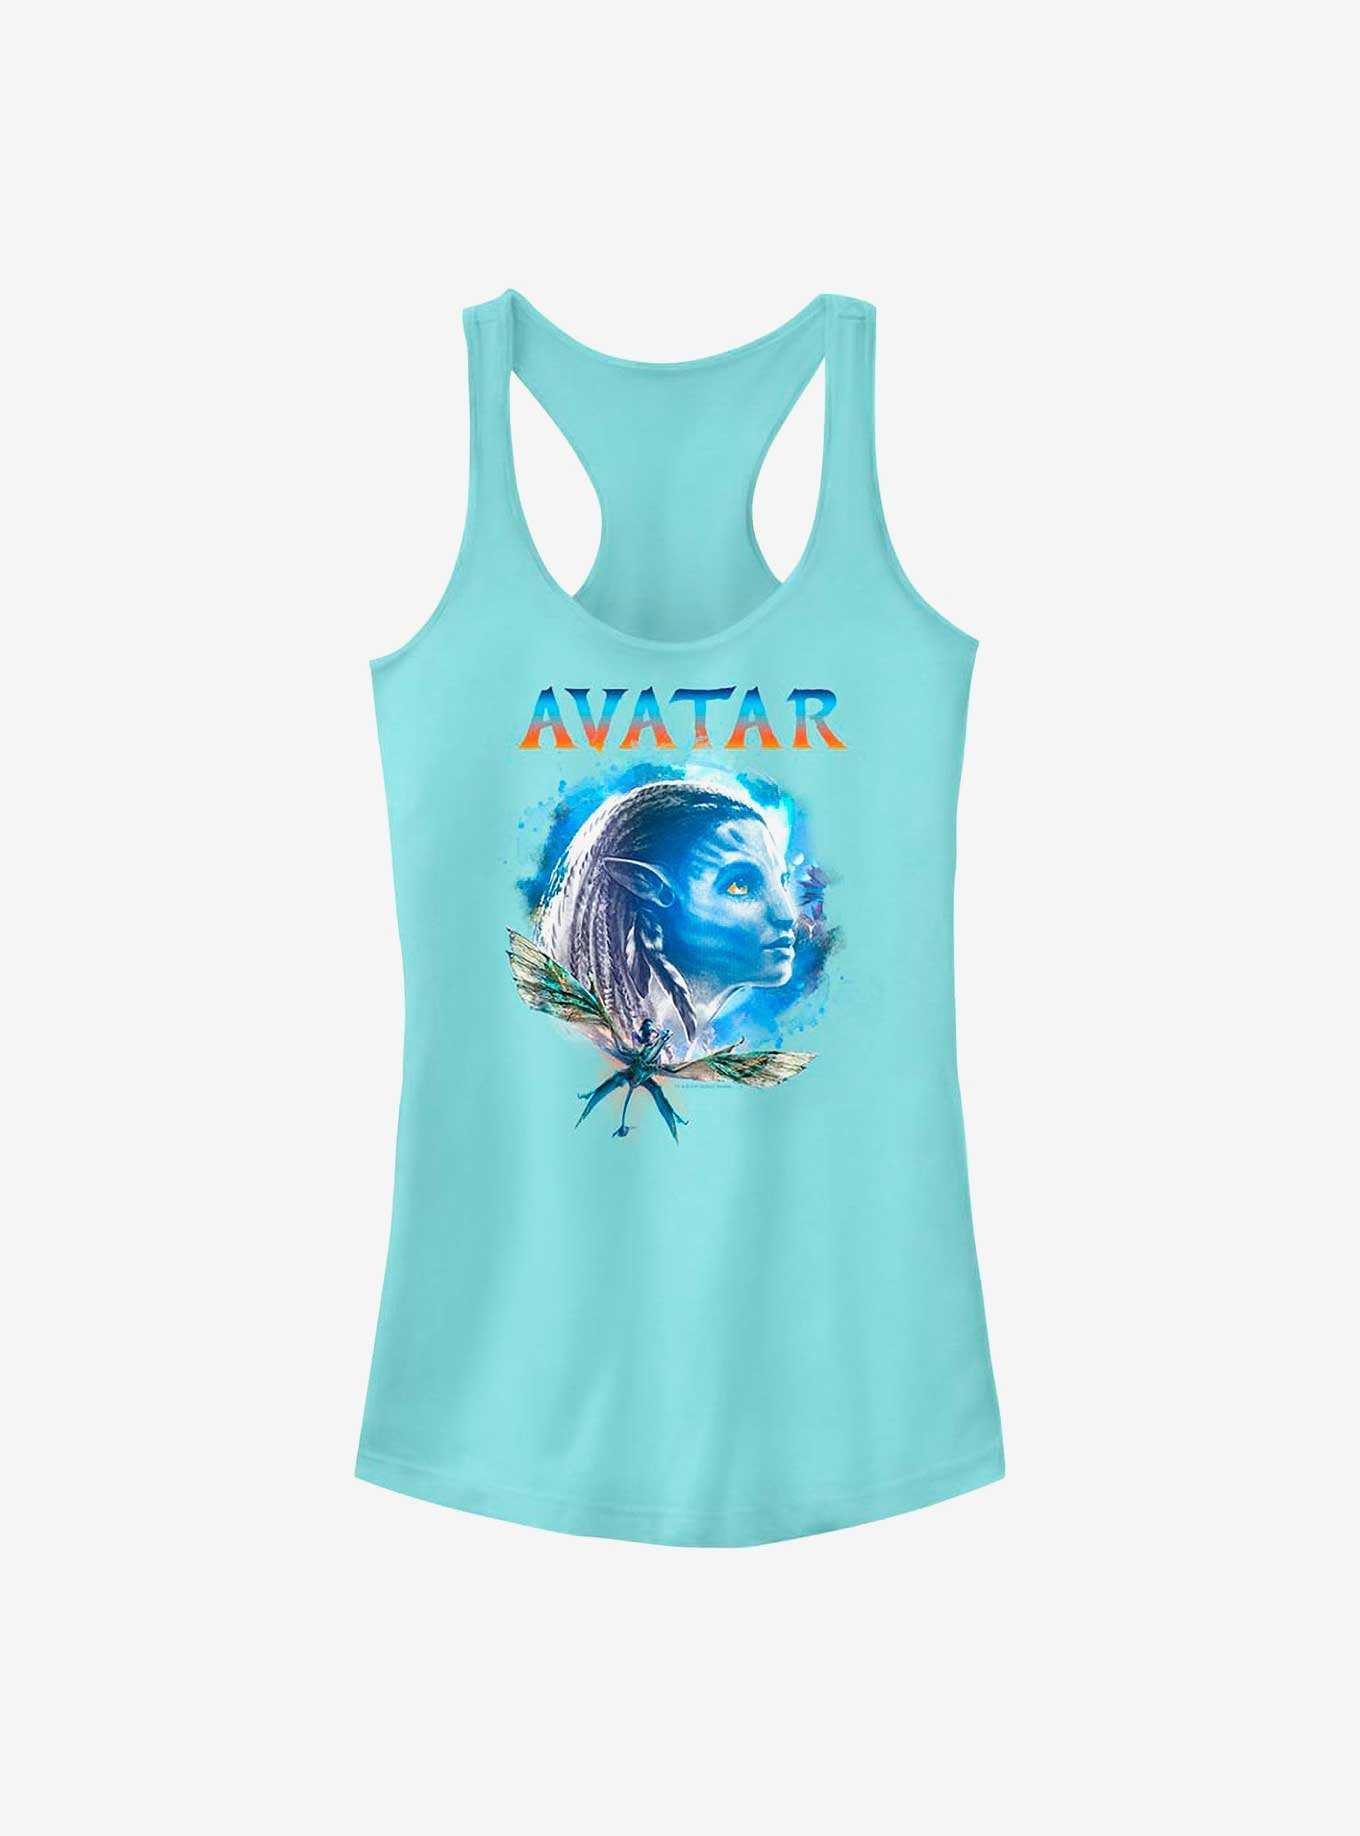 Avatar: The Way of Water Neytiri Navi Girls Tank, , hi-res